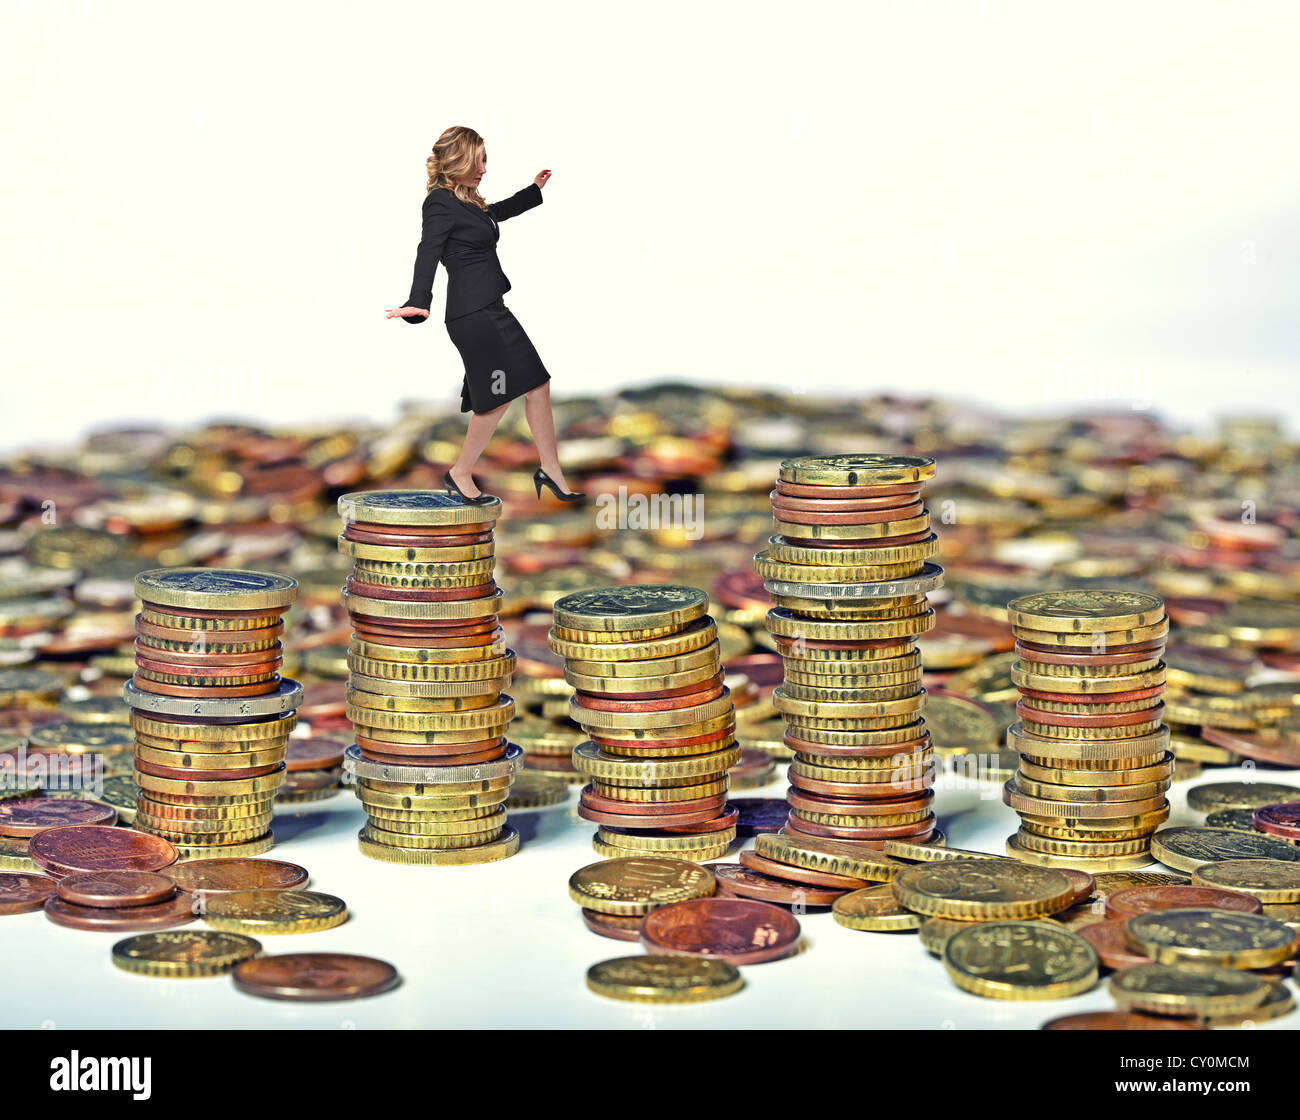 Businesswoman marche sur des piles de pièces en euros Banque D'Images